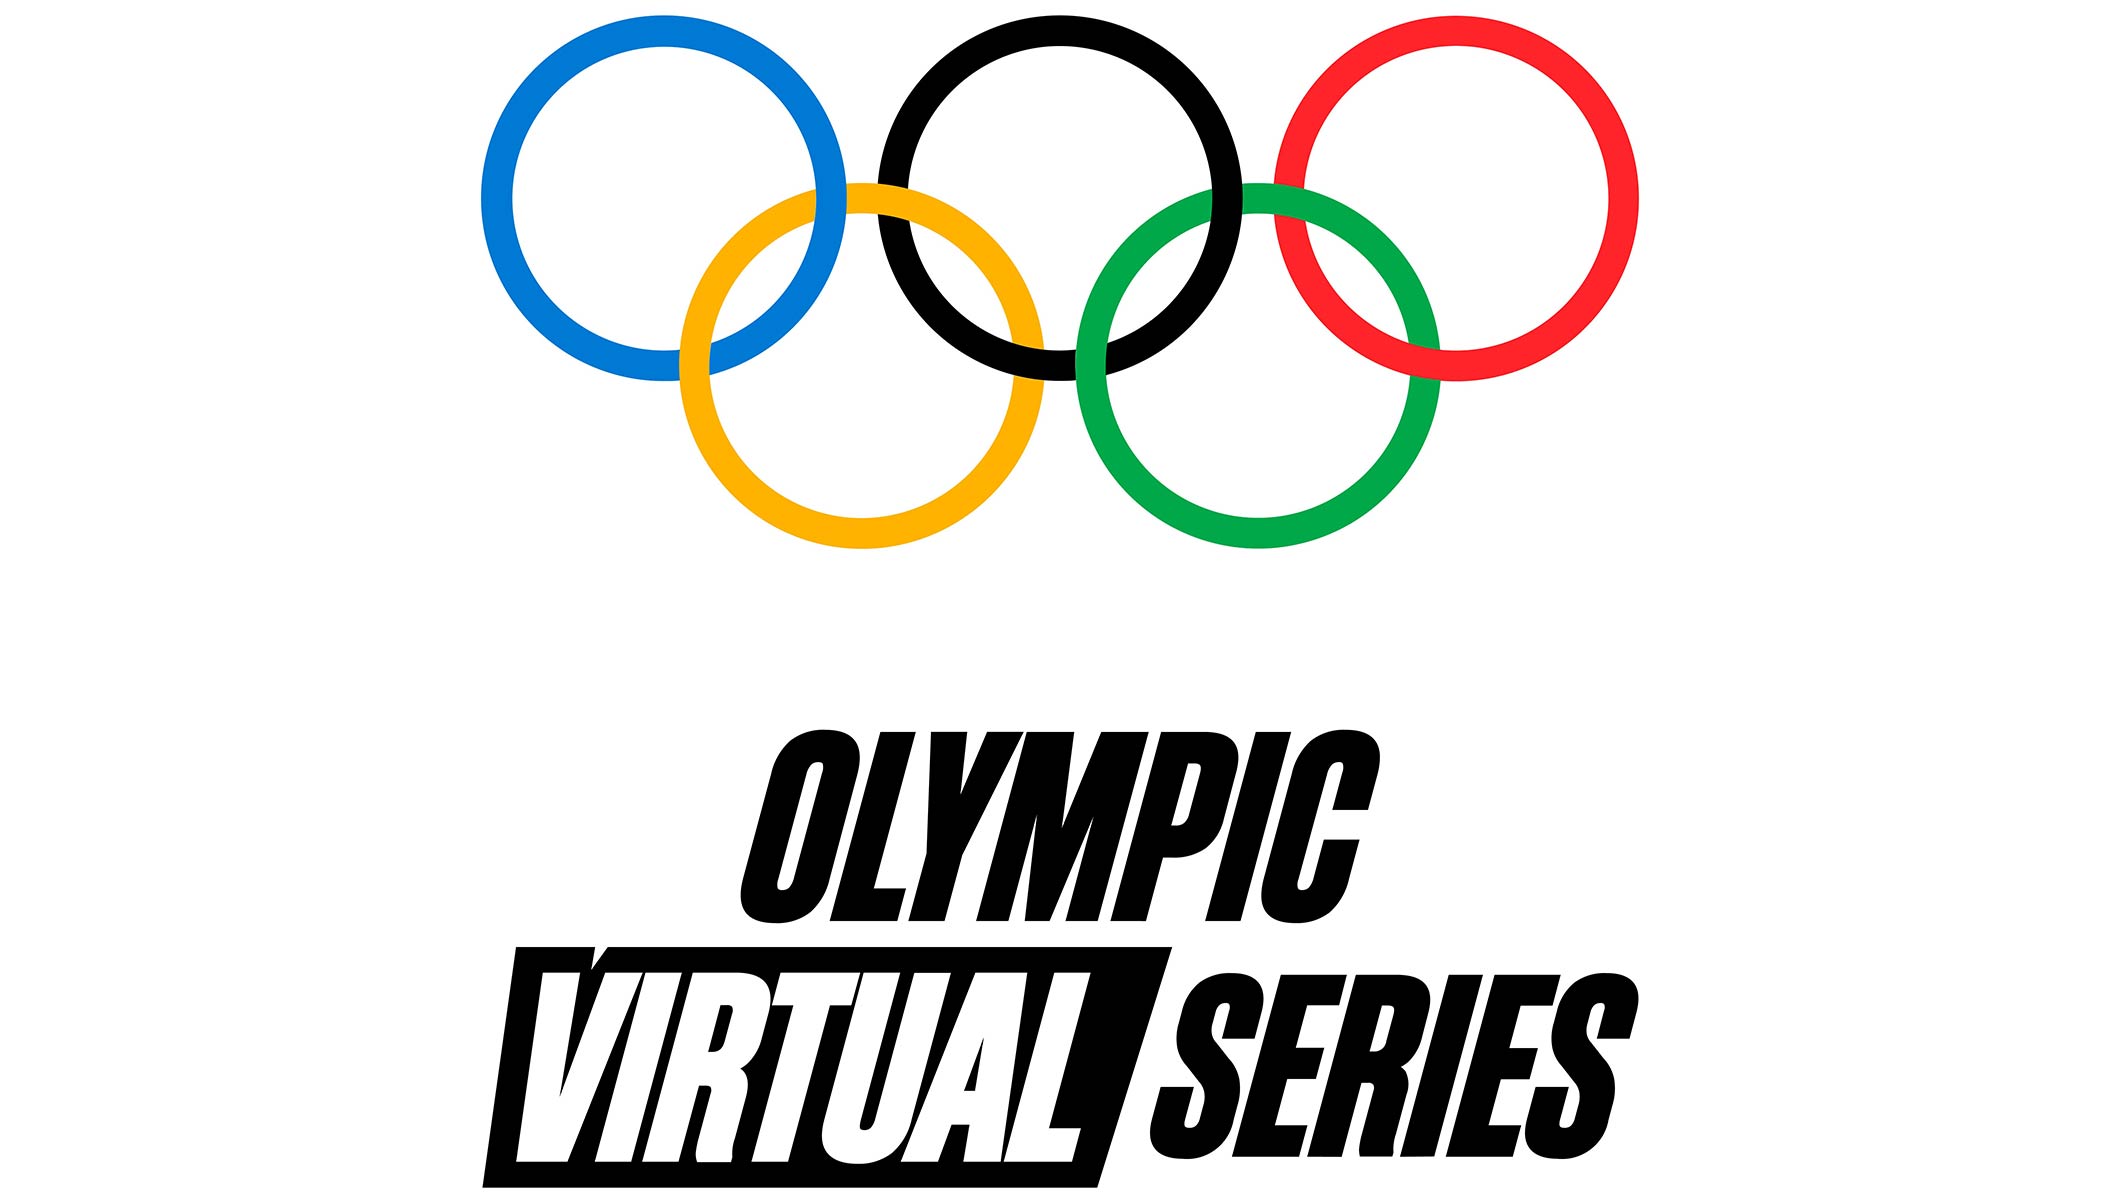 МОК анонсировал дату проведения первых виртуальных Олимпийских игр